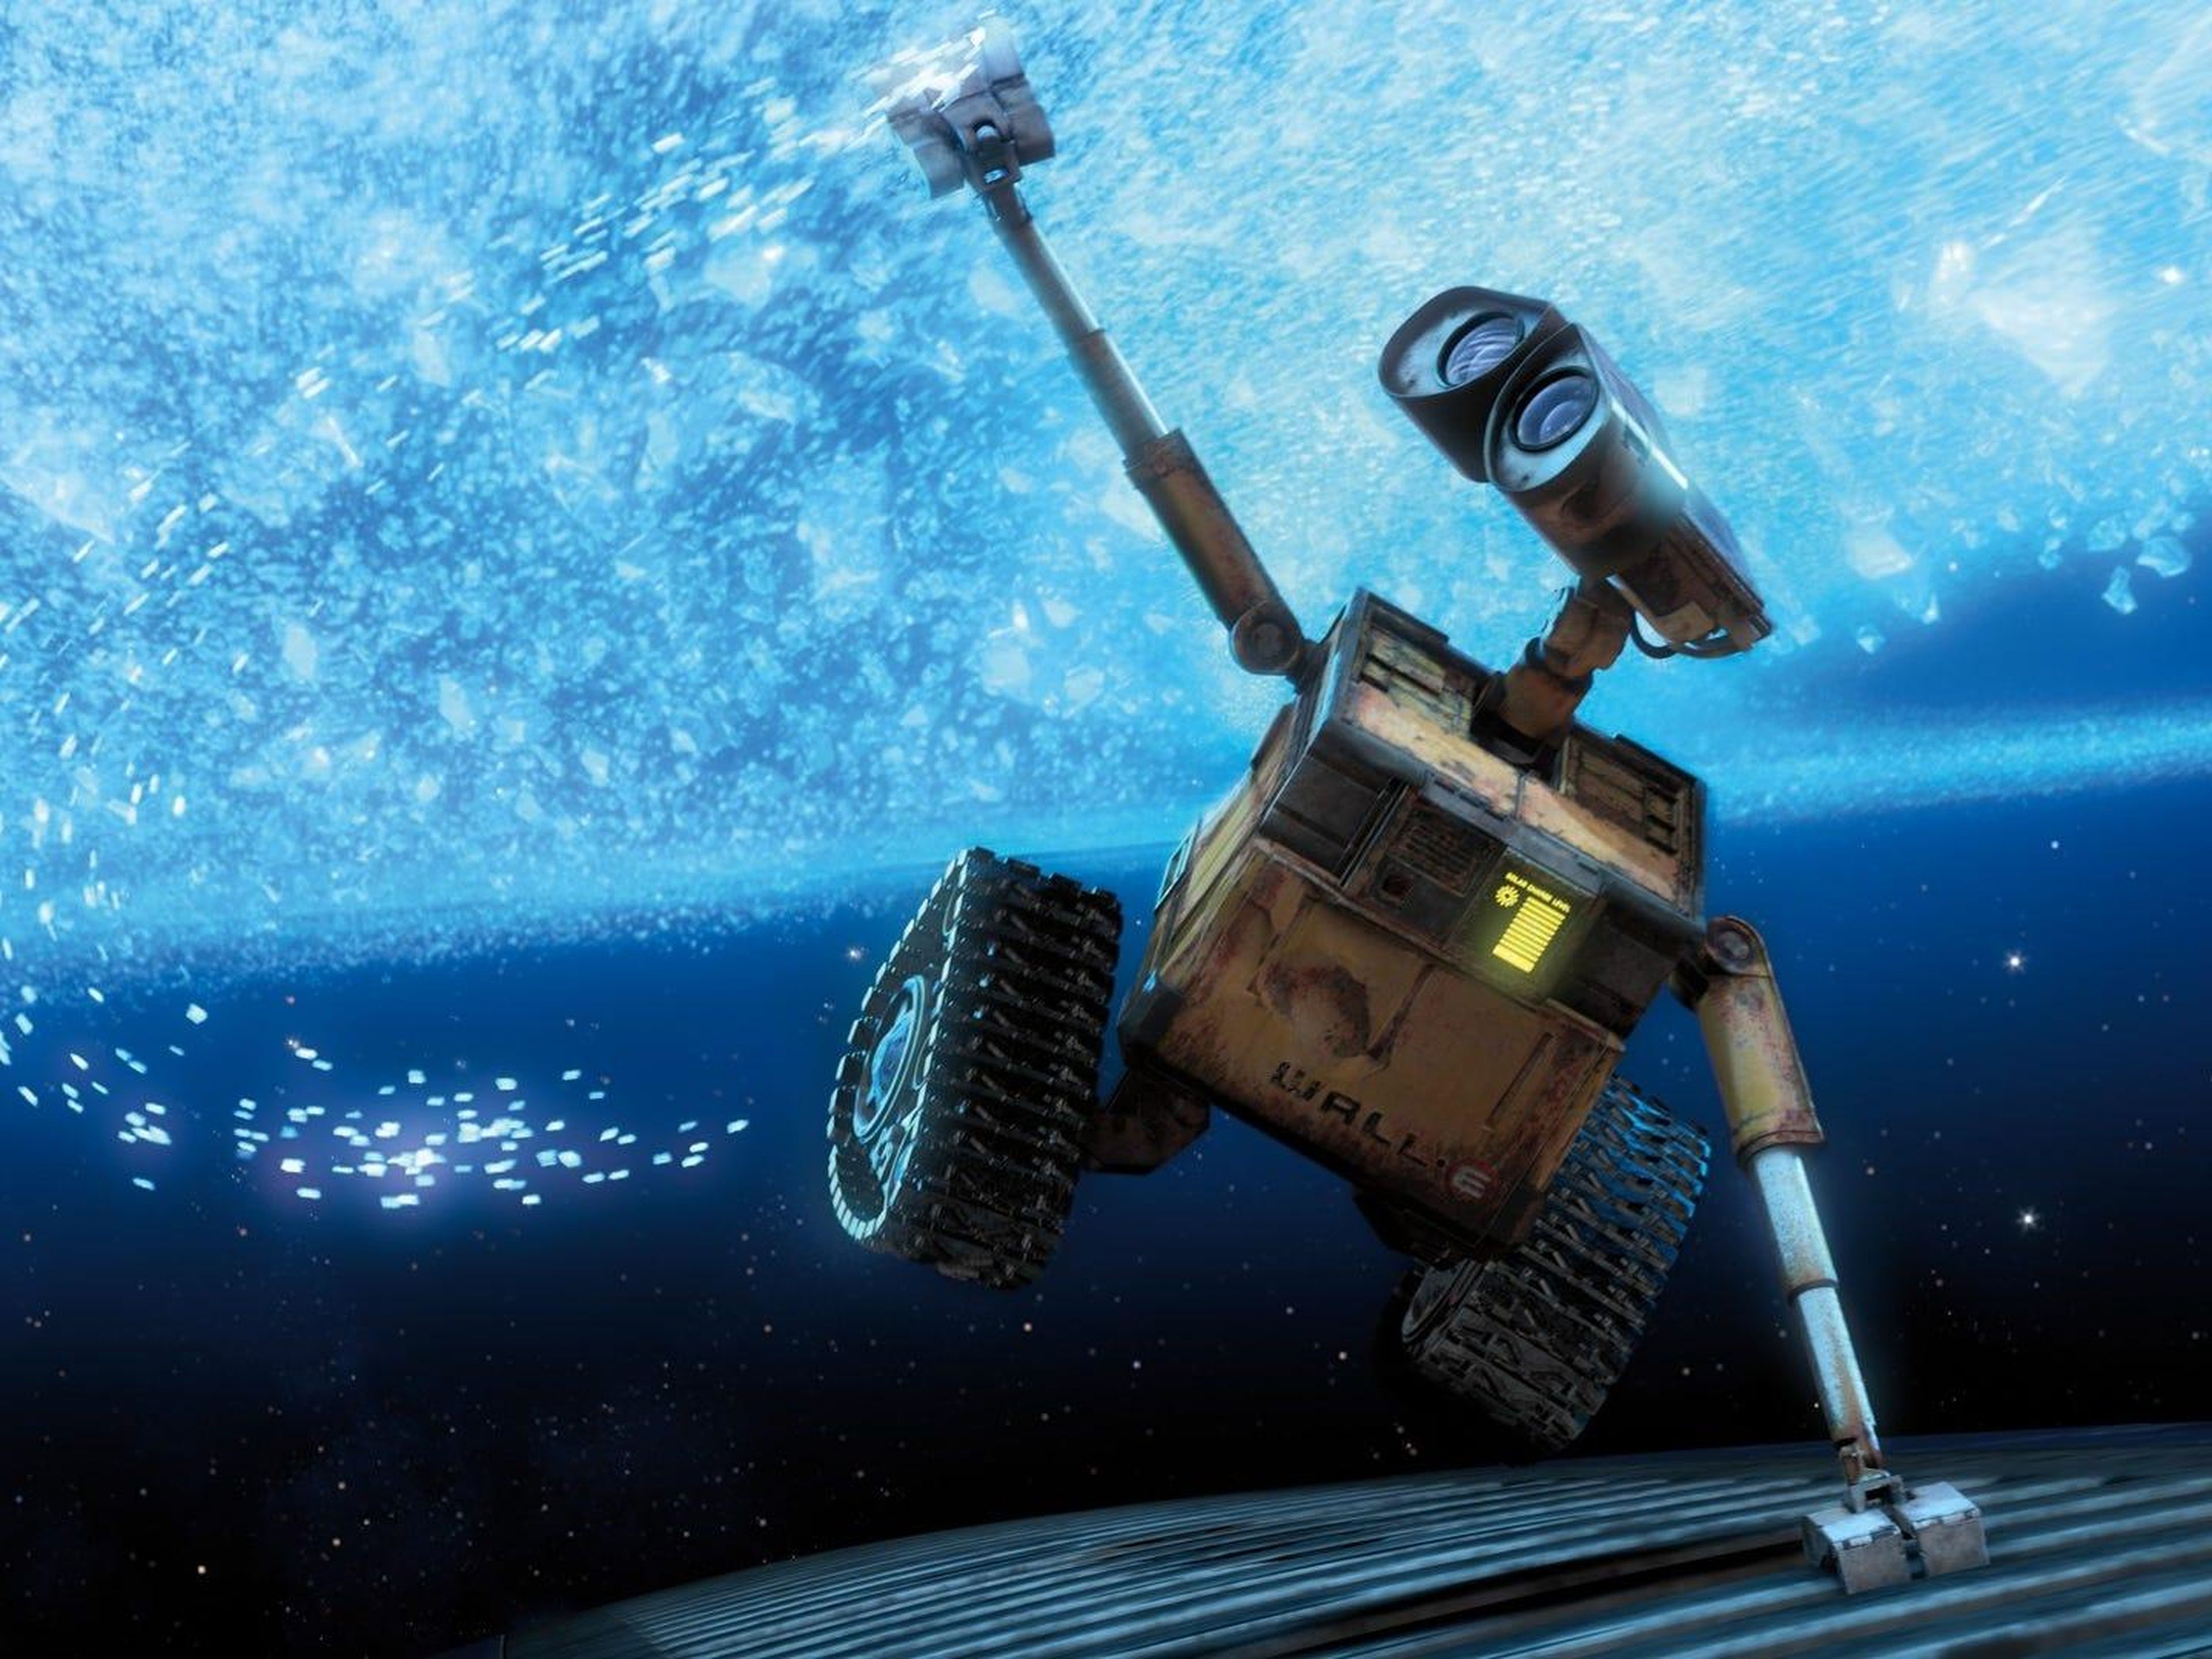 Qué es lo que no me gusta de "WALL-E"?